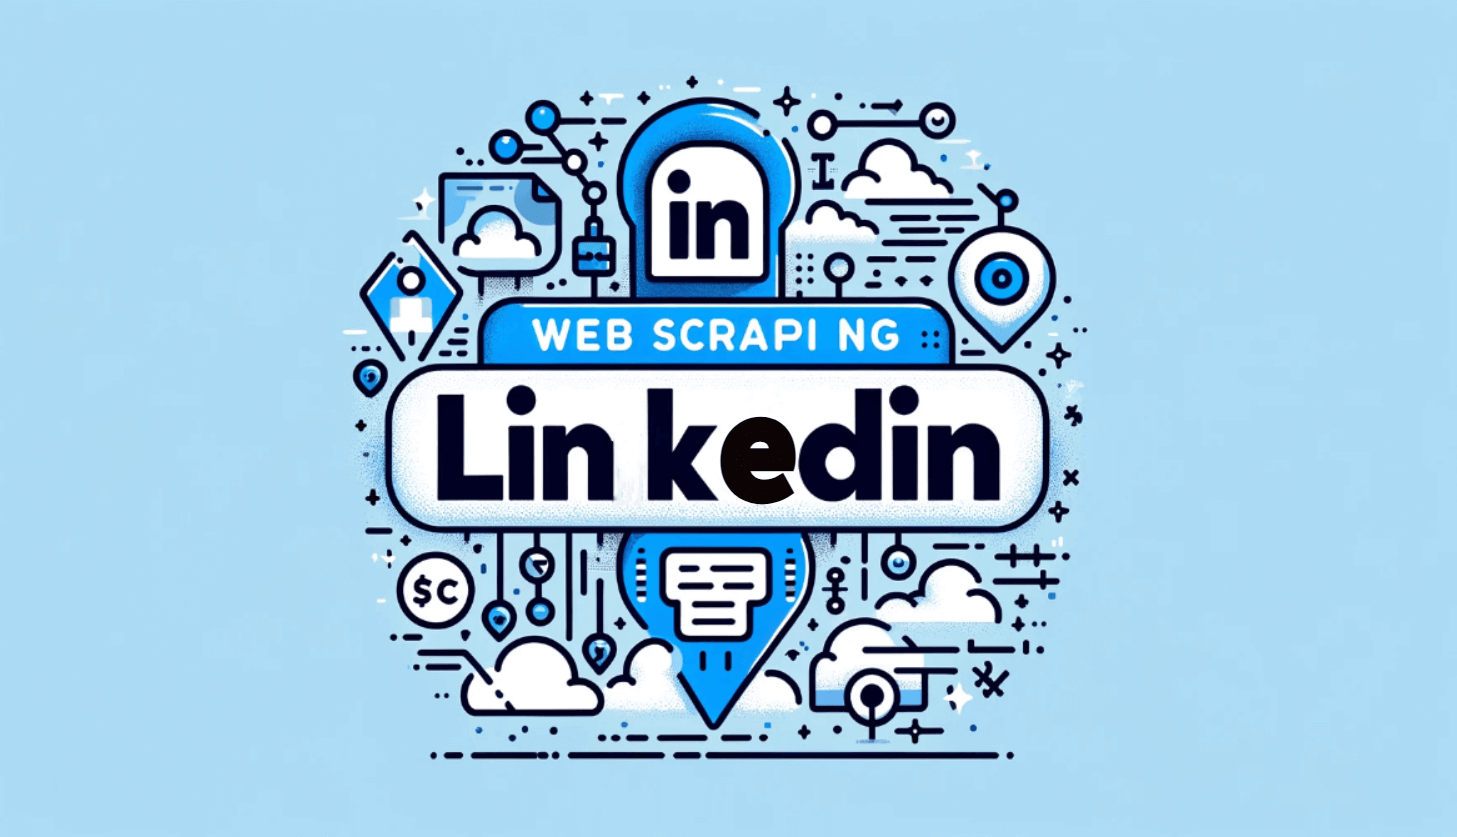 Is it legal to scrape LinkedIn data